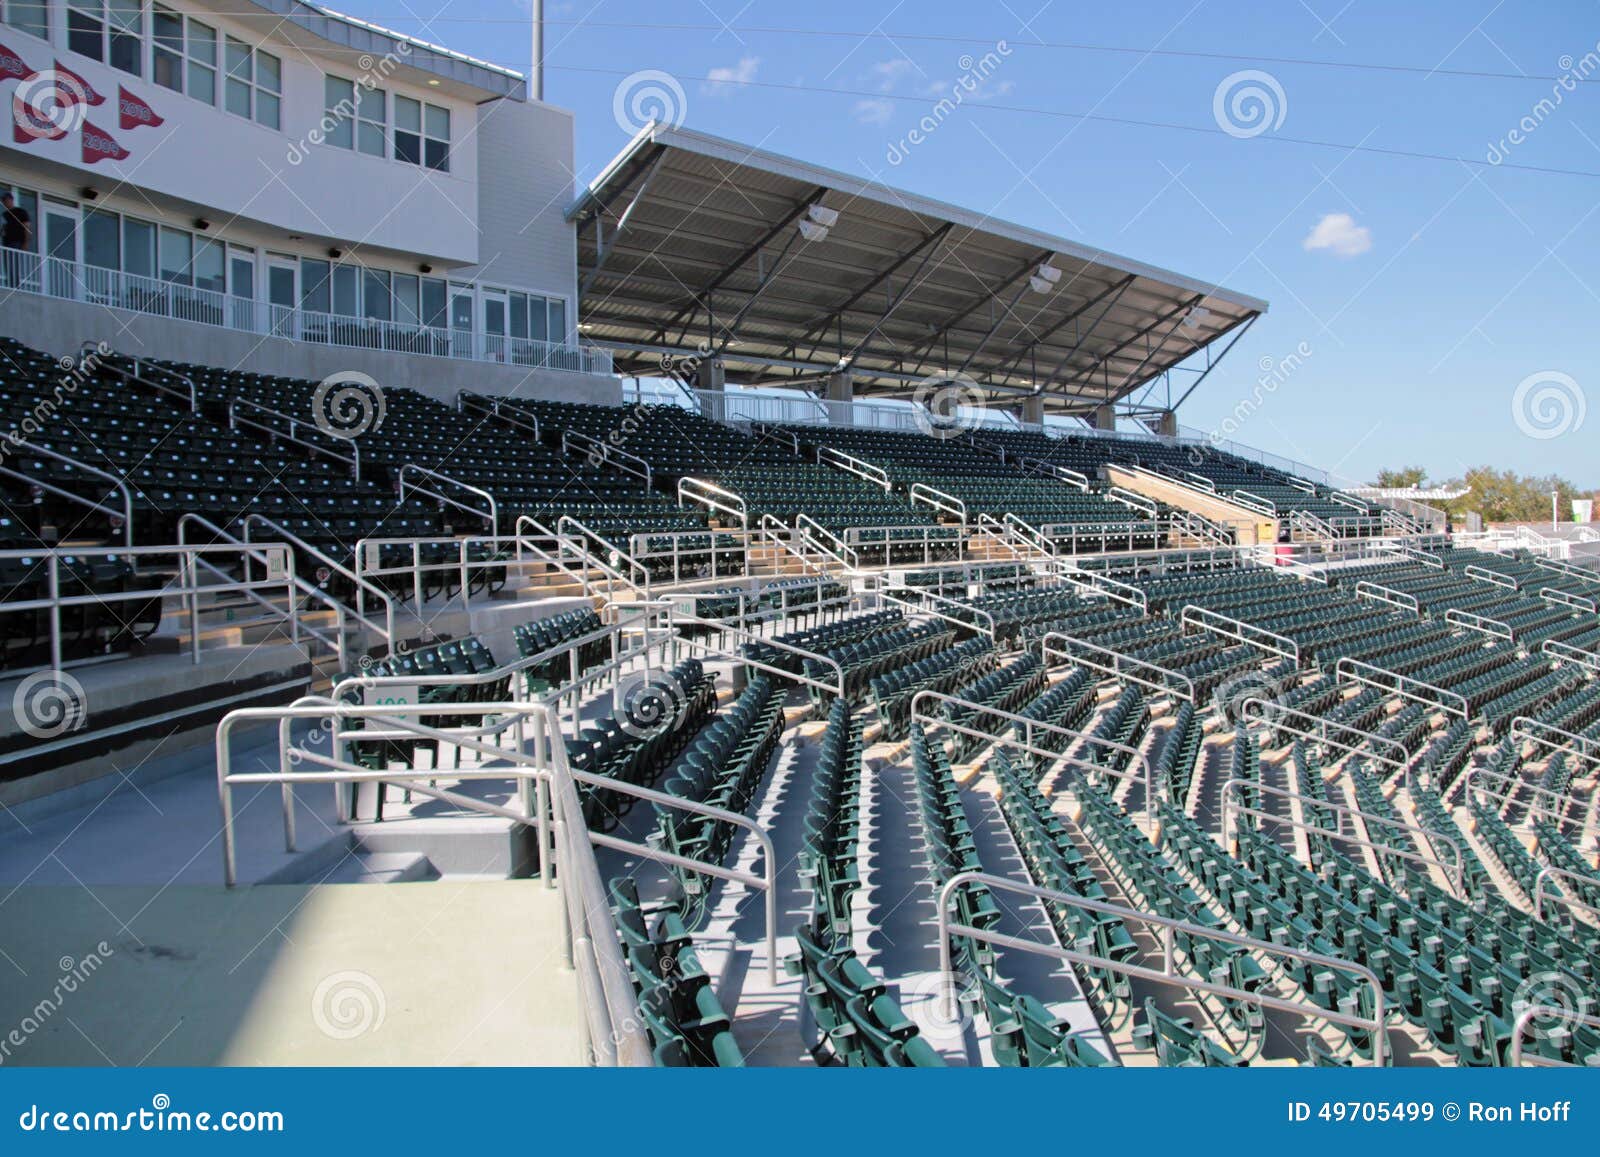 Hammond Stadium Seating Chart